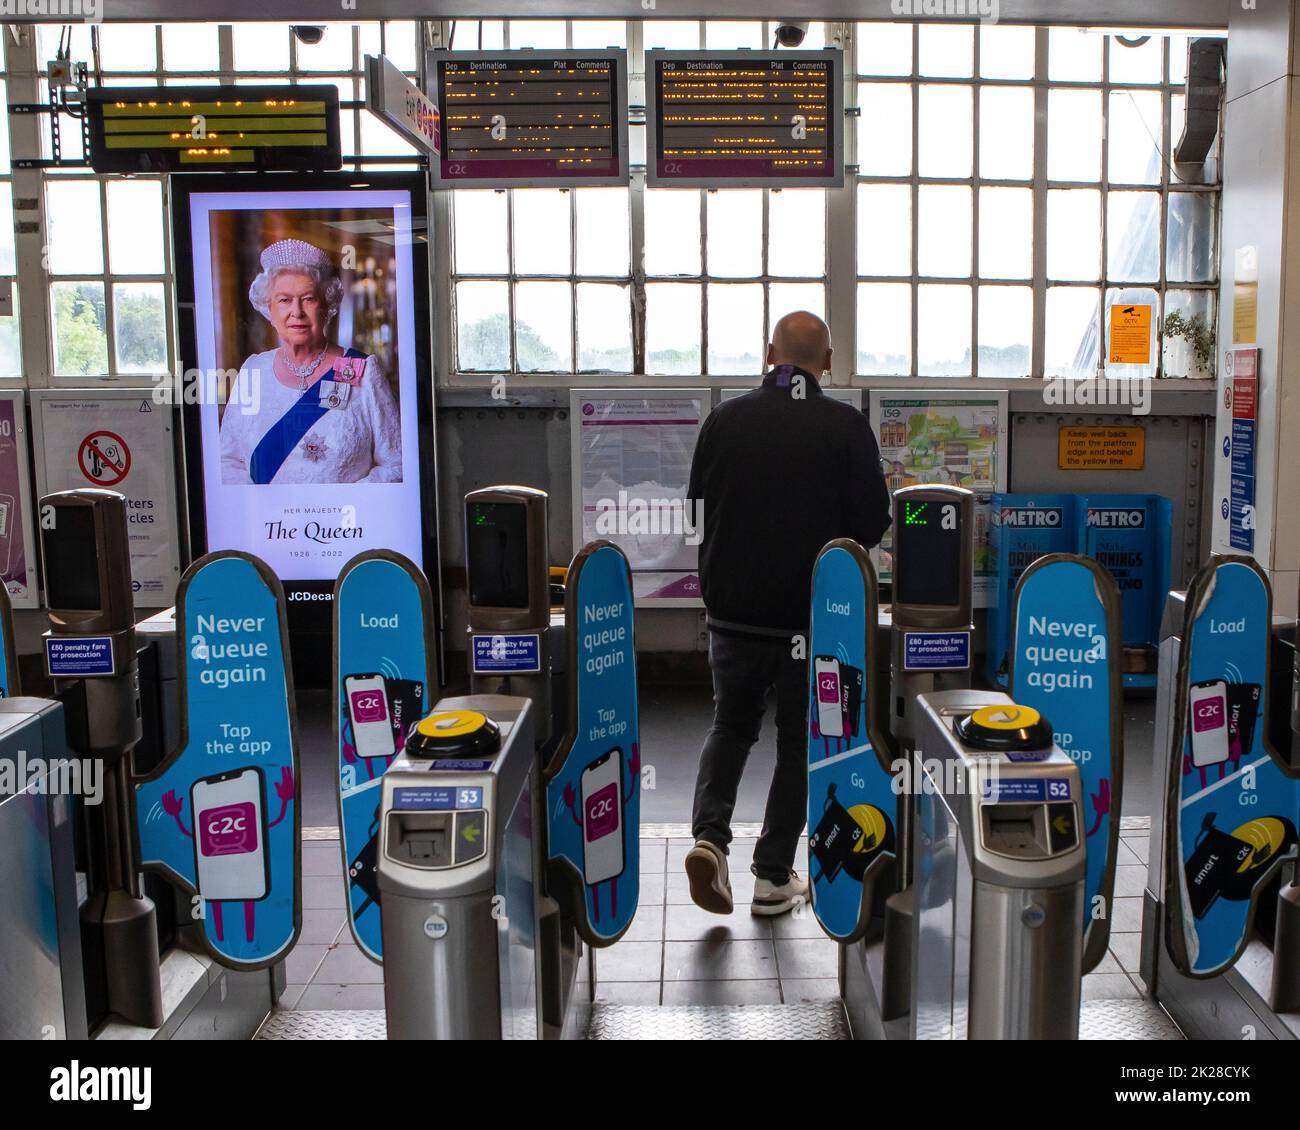 Londra, Regno Unito - Settembre 9th 2022: Uno schermo all'interno della stazione della metropolitana di Upminster a Londra, Regno Unito, che commemora la Regina Elisabetta II, che morì il precedente Foto Stock